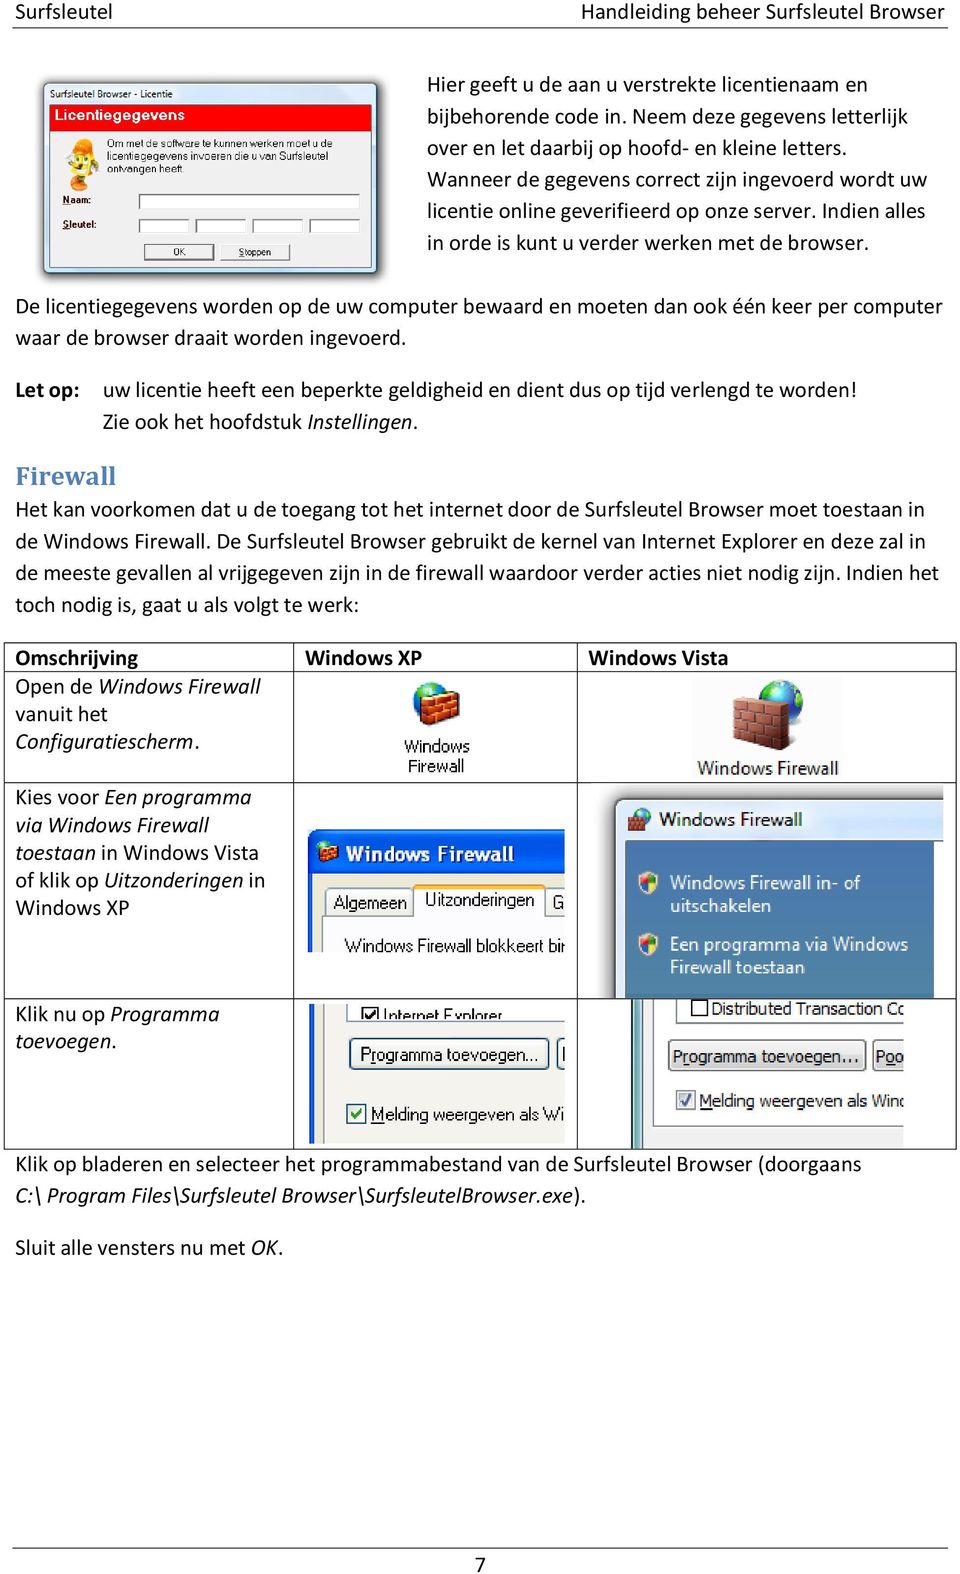 De licentiegegevens worden op de uw computer bewaard en moeten dan ook één keer per computer waar de browser draait worden ingevoerd.